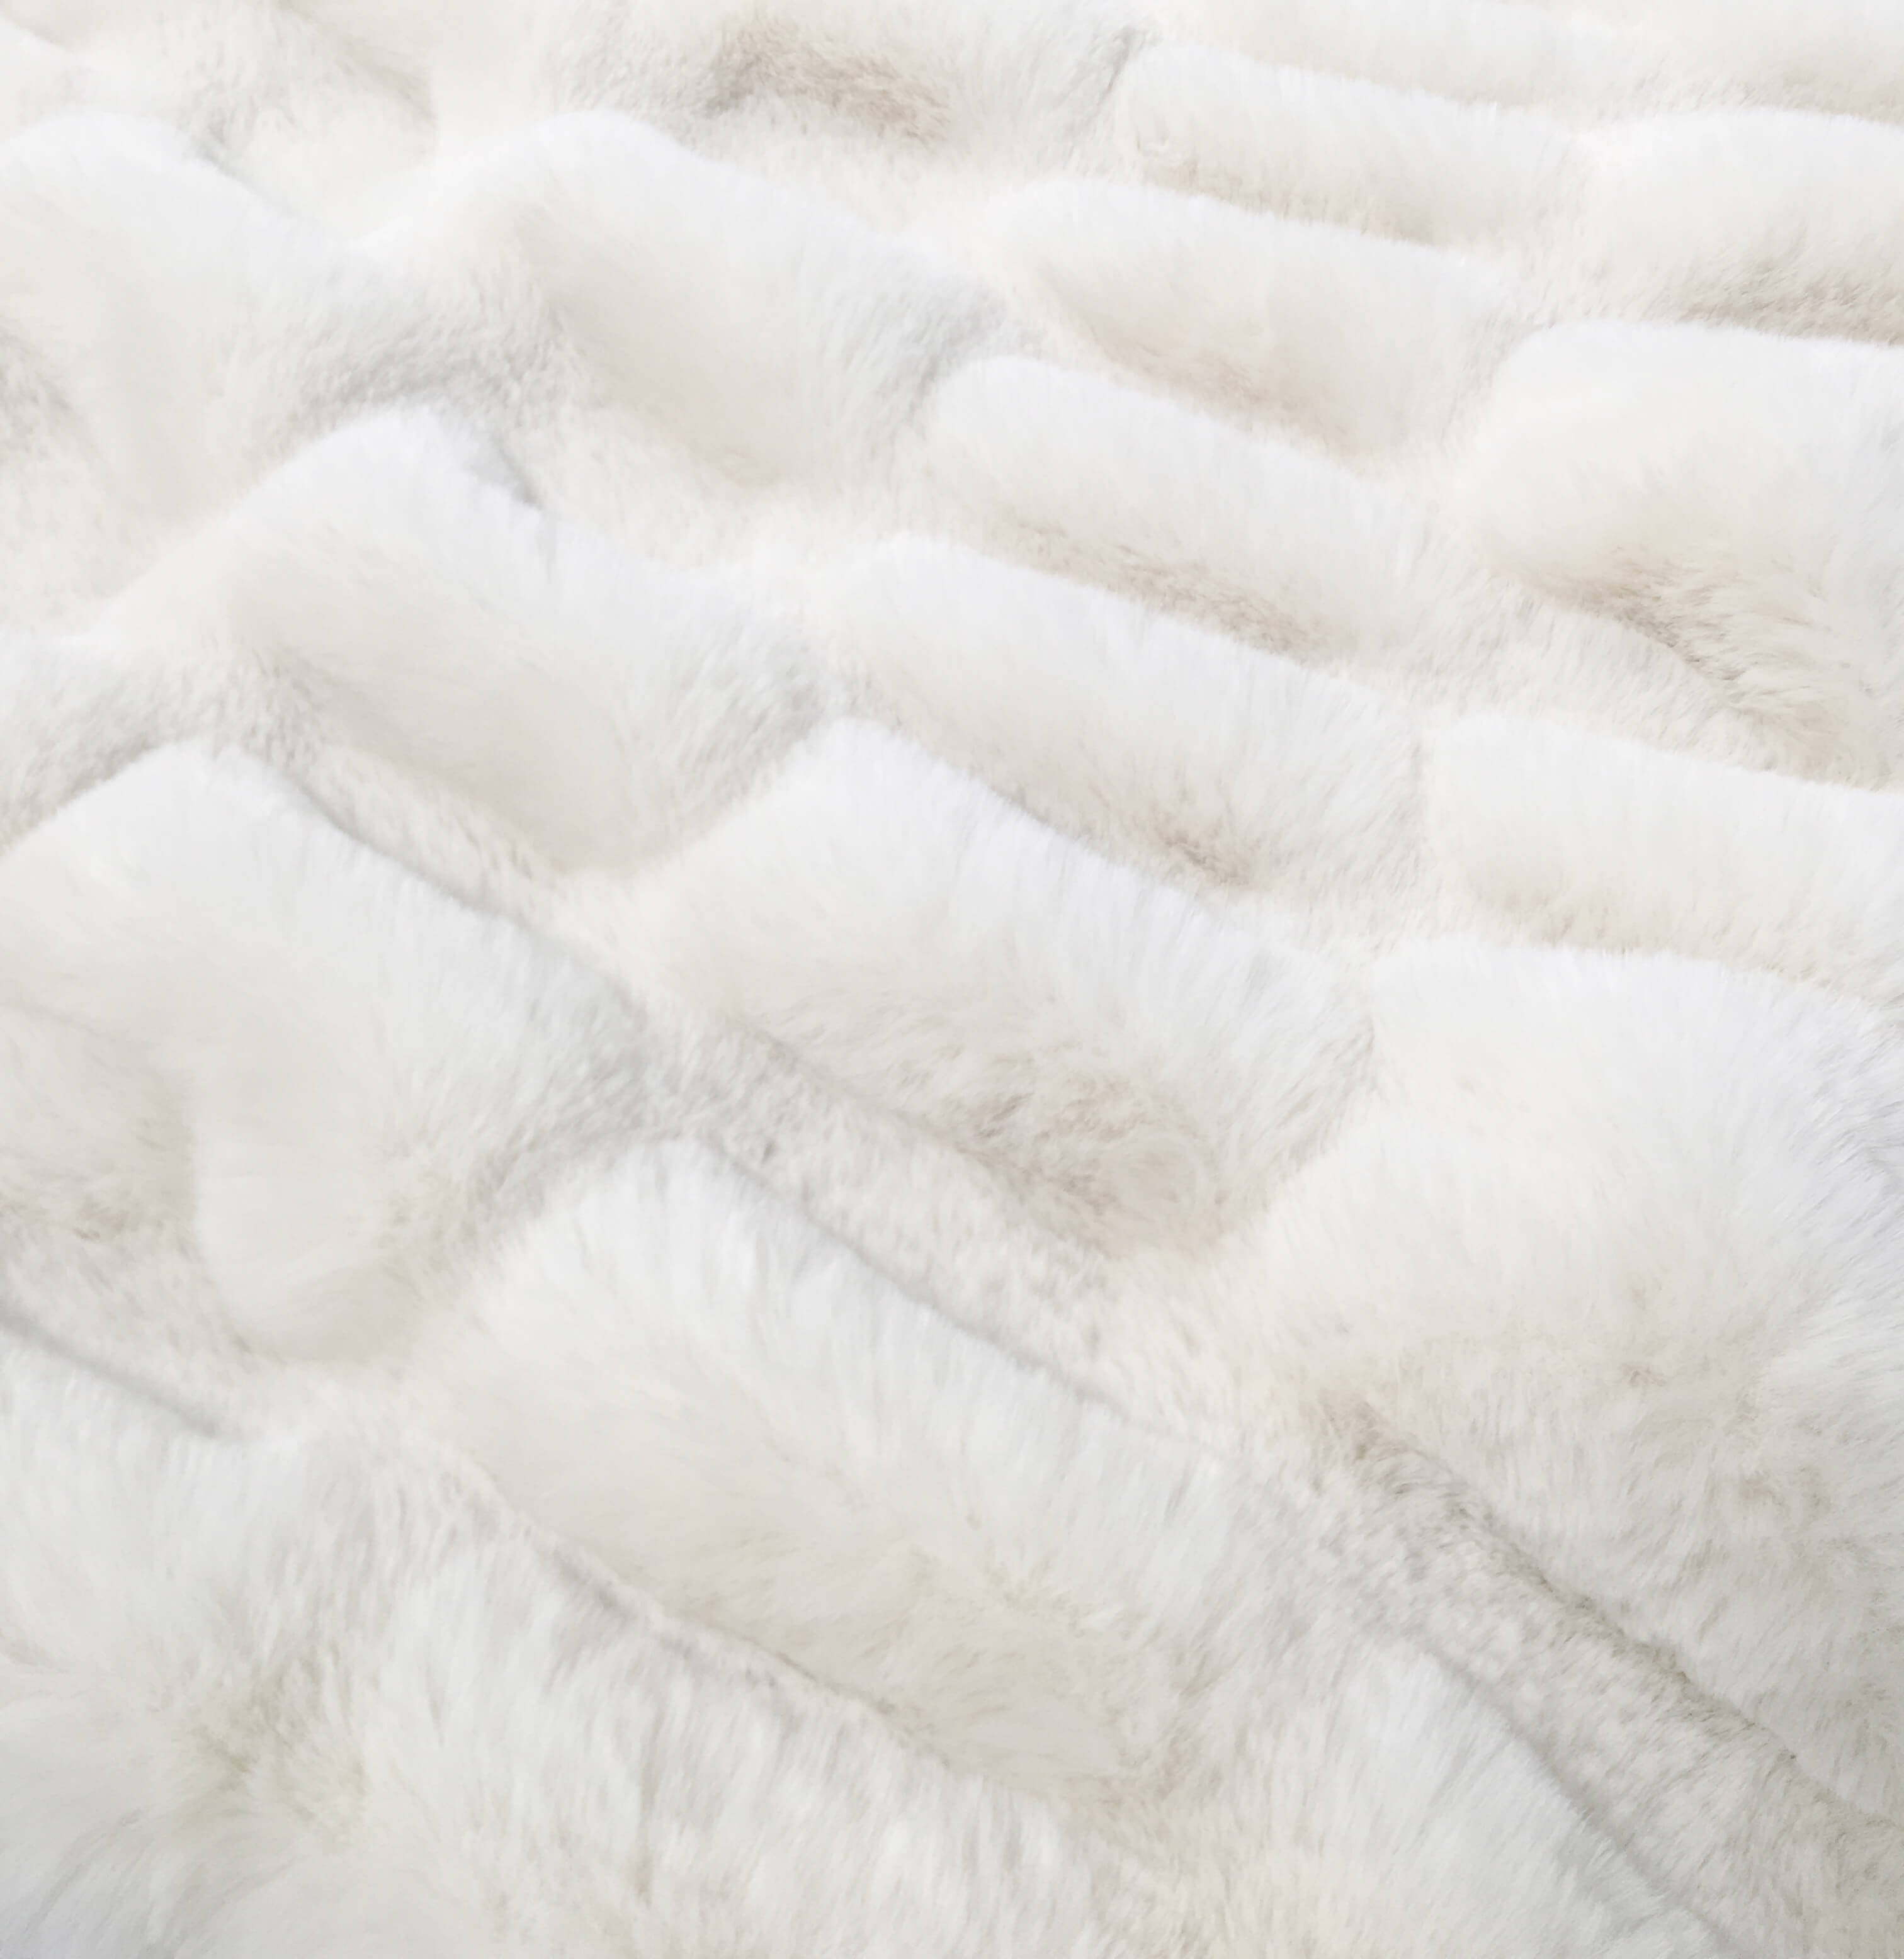 RKS-0334 Custom Size Super Soft Fluffy Cozy Elastic Rabbit Fur Blanket Spandex Faux Fur Throw Blanket Spandex Rabbit Fur Throw Blanket 100% Poly